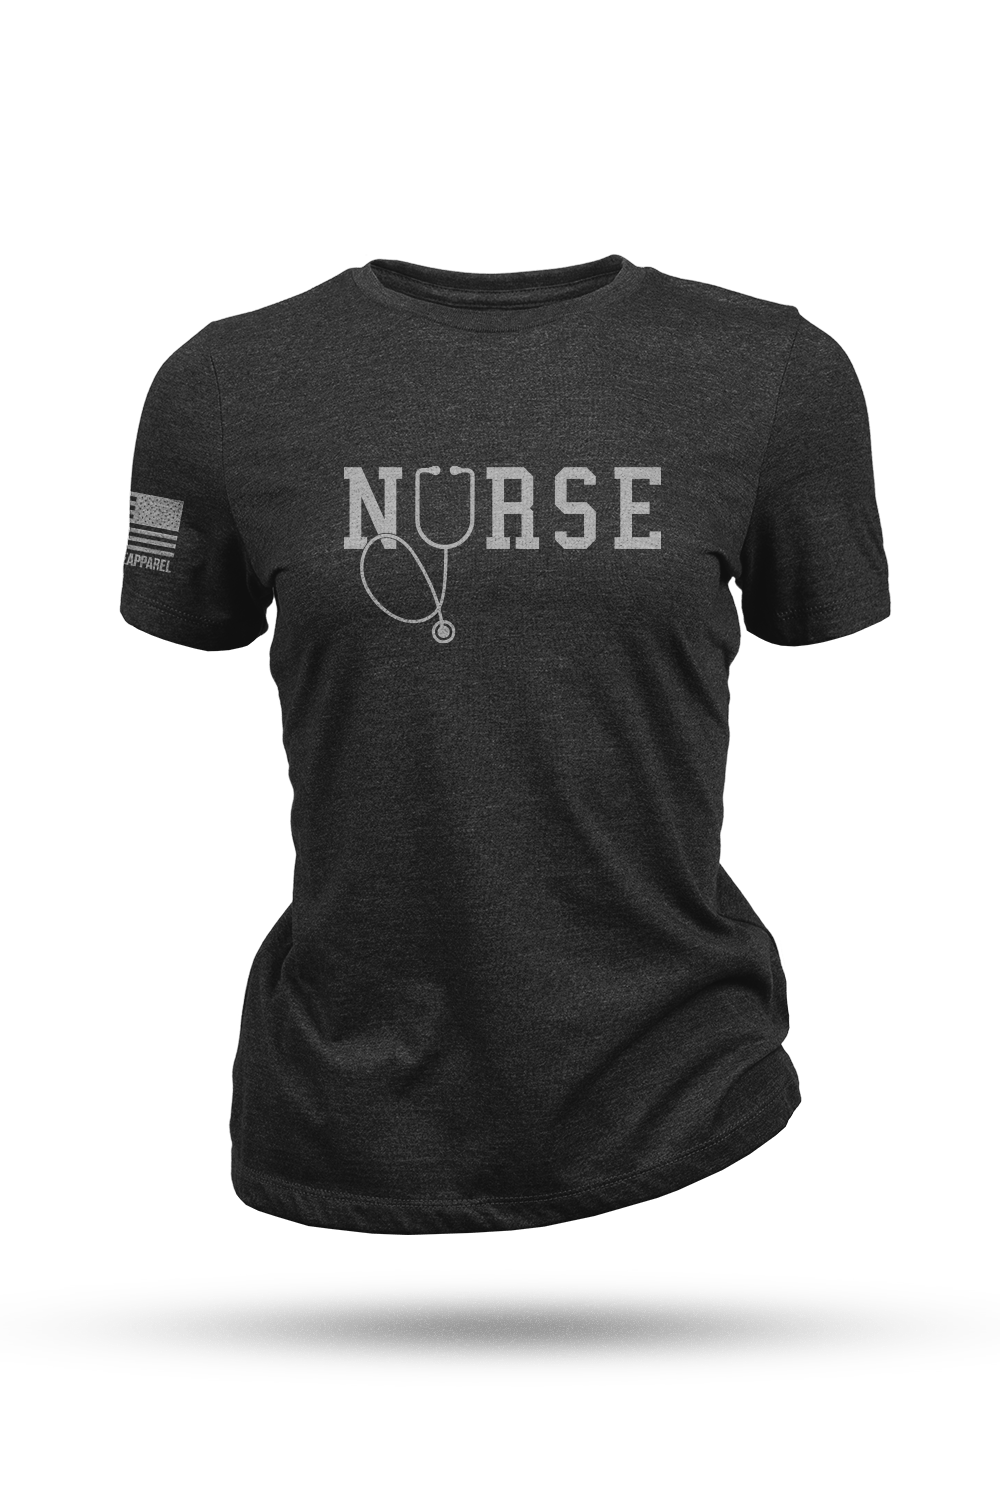 Women's T-Shirt - Nurse